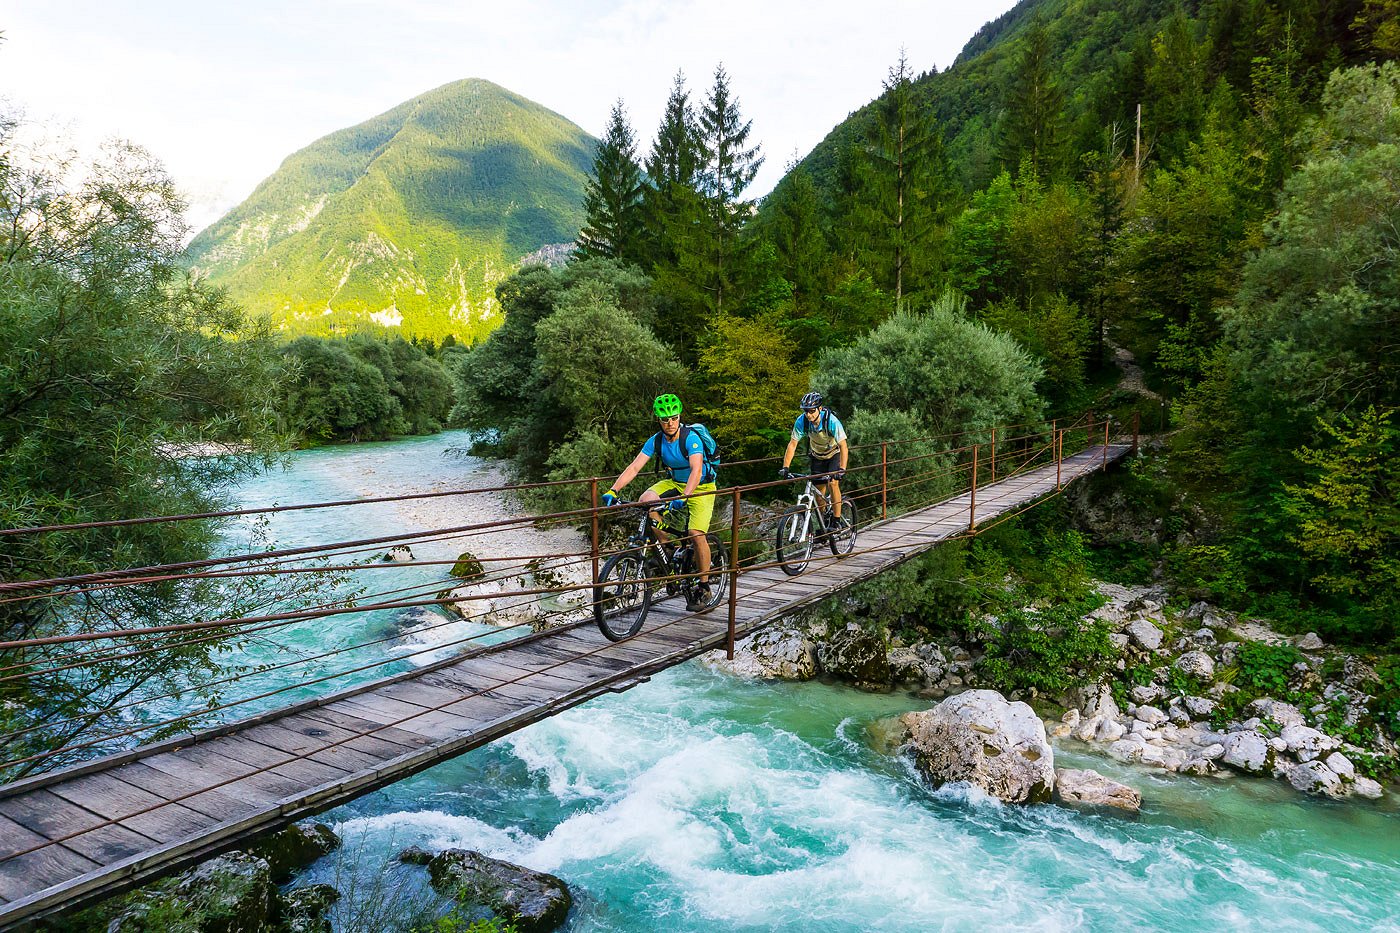 Gli appassionati di mountain bike attraversano il fiume Isonzo su un ponte sospeso in legno